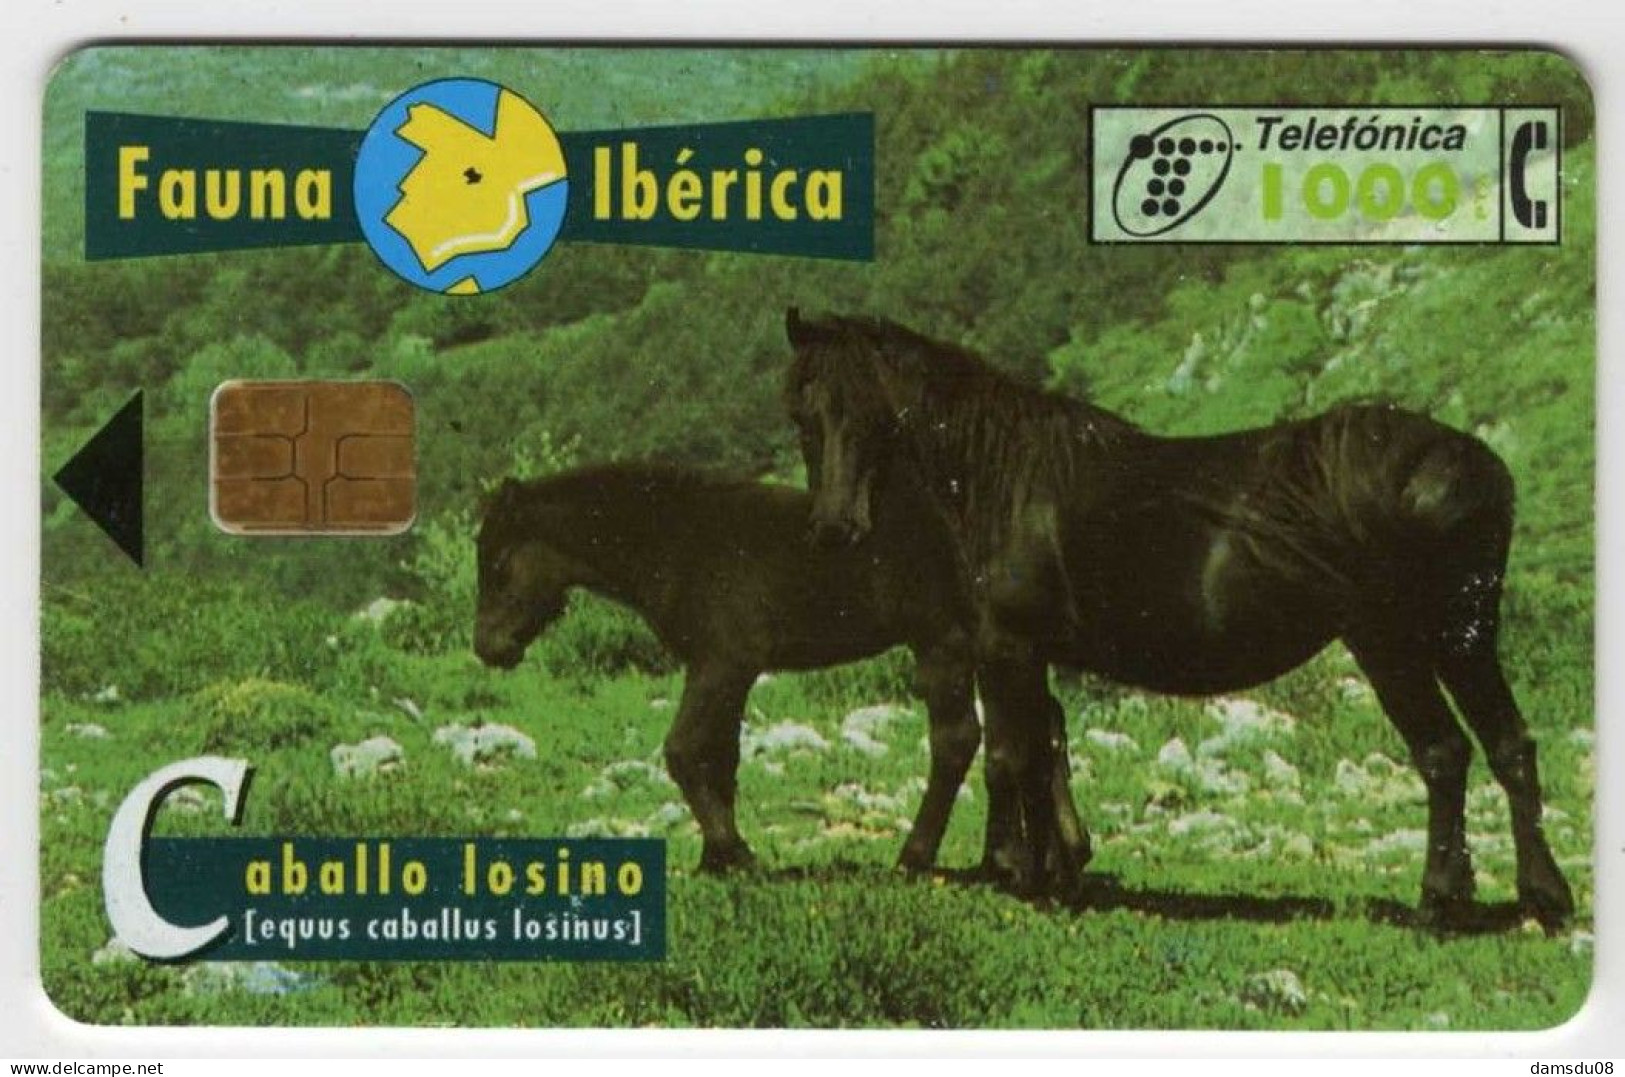 Espagne 1000 PTA Fauna Iberica Caballo Losino 01/97 1.000.000 Exemplaires Vide Cheval - Emissioni Di Base